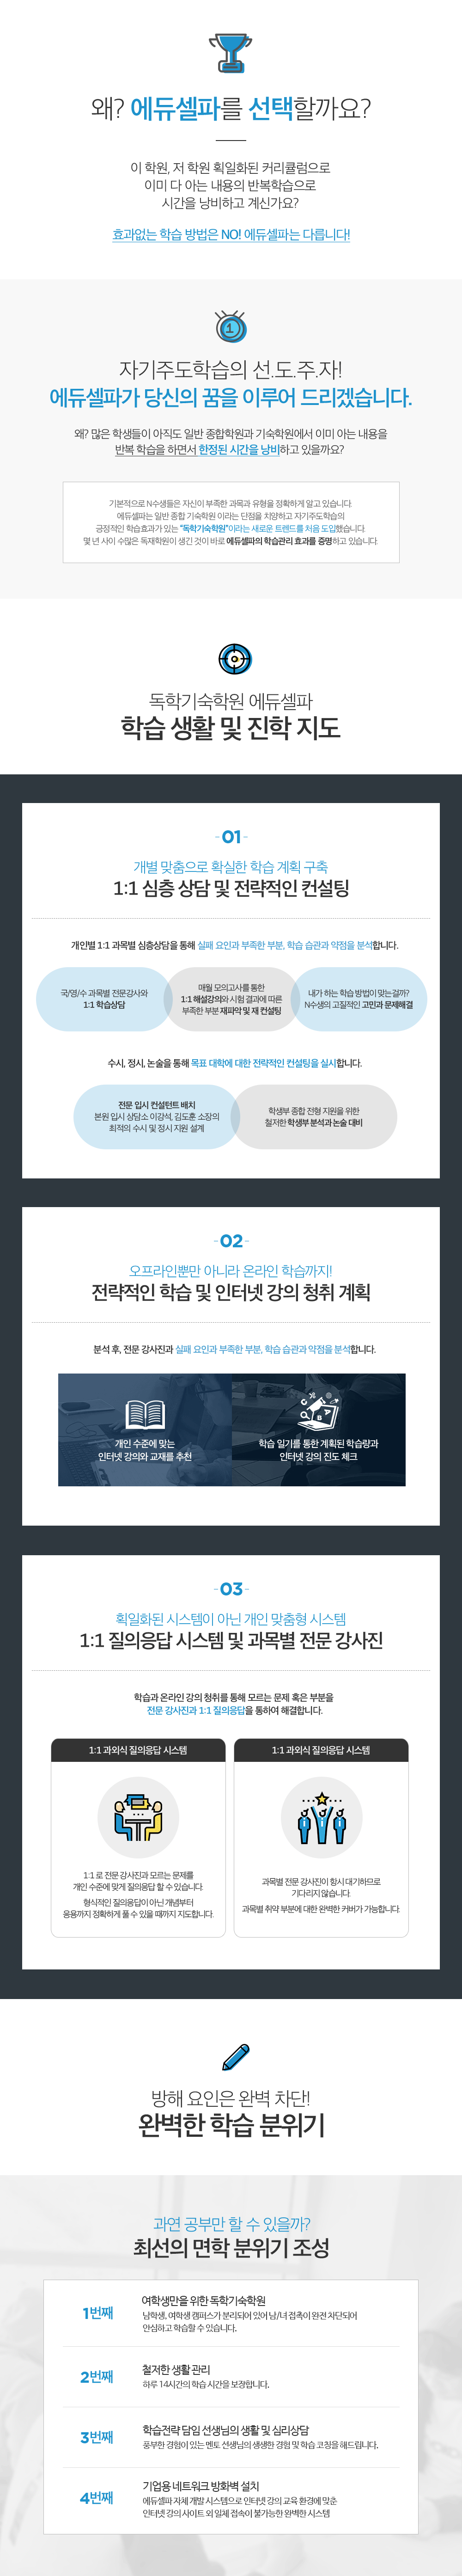 2019재수선행반 소개